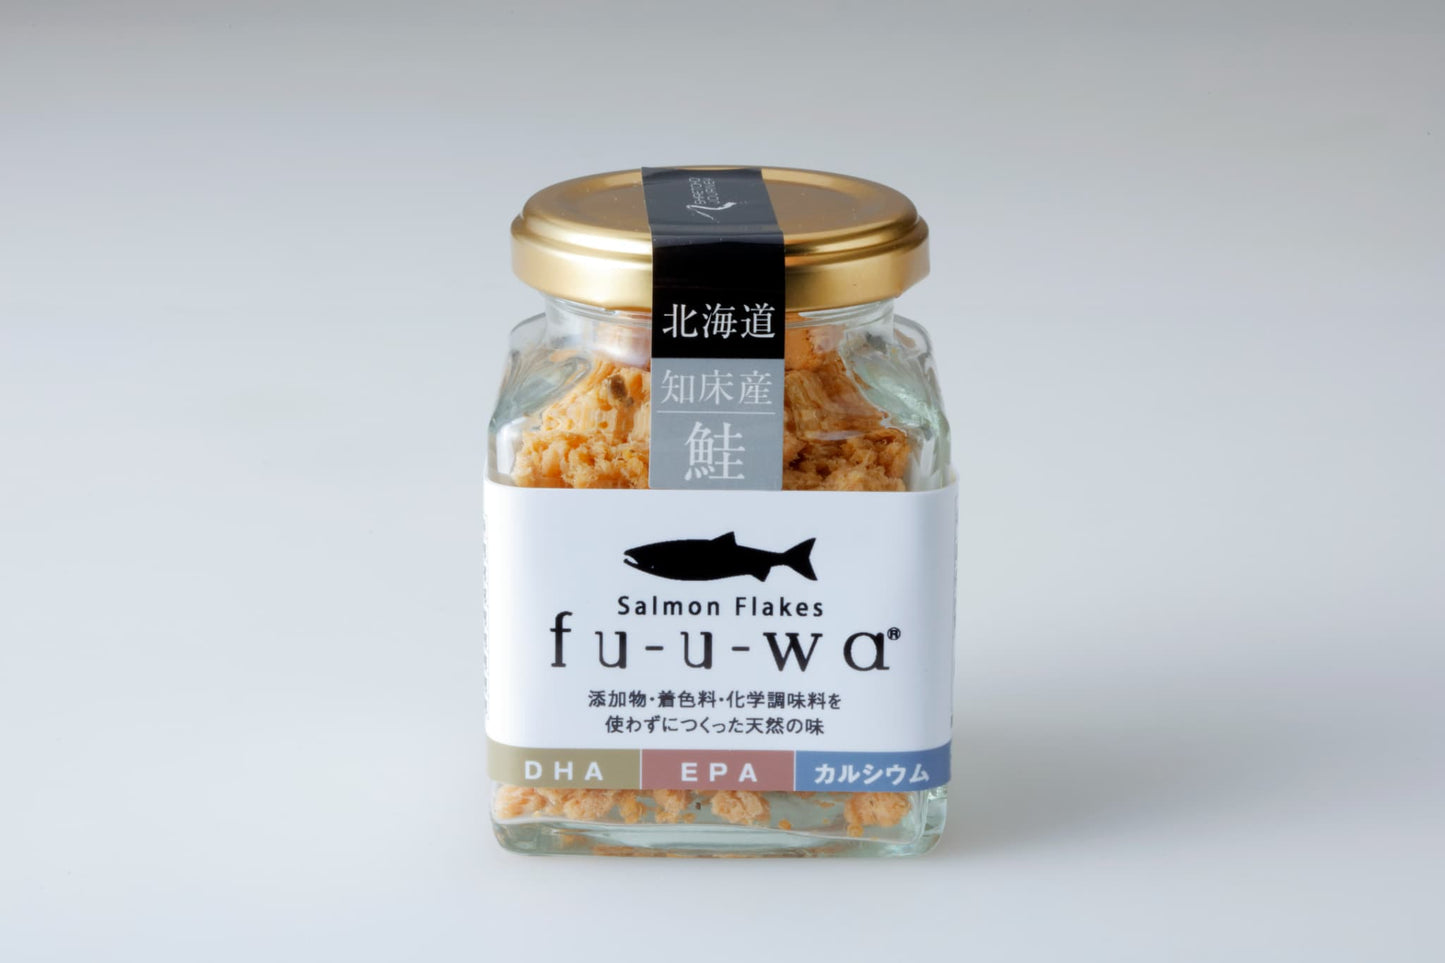 【送料別】鮭丸ごと1本「fu-u-waサーモンフレークセット」